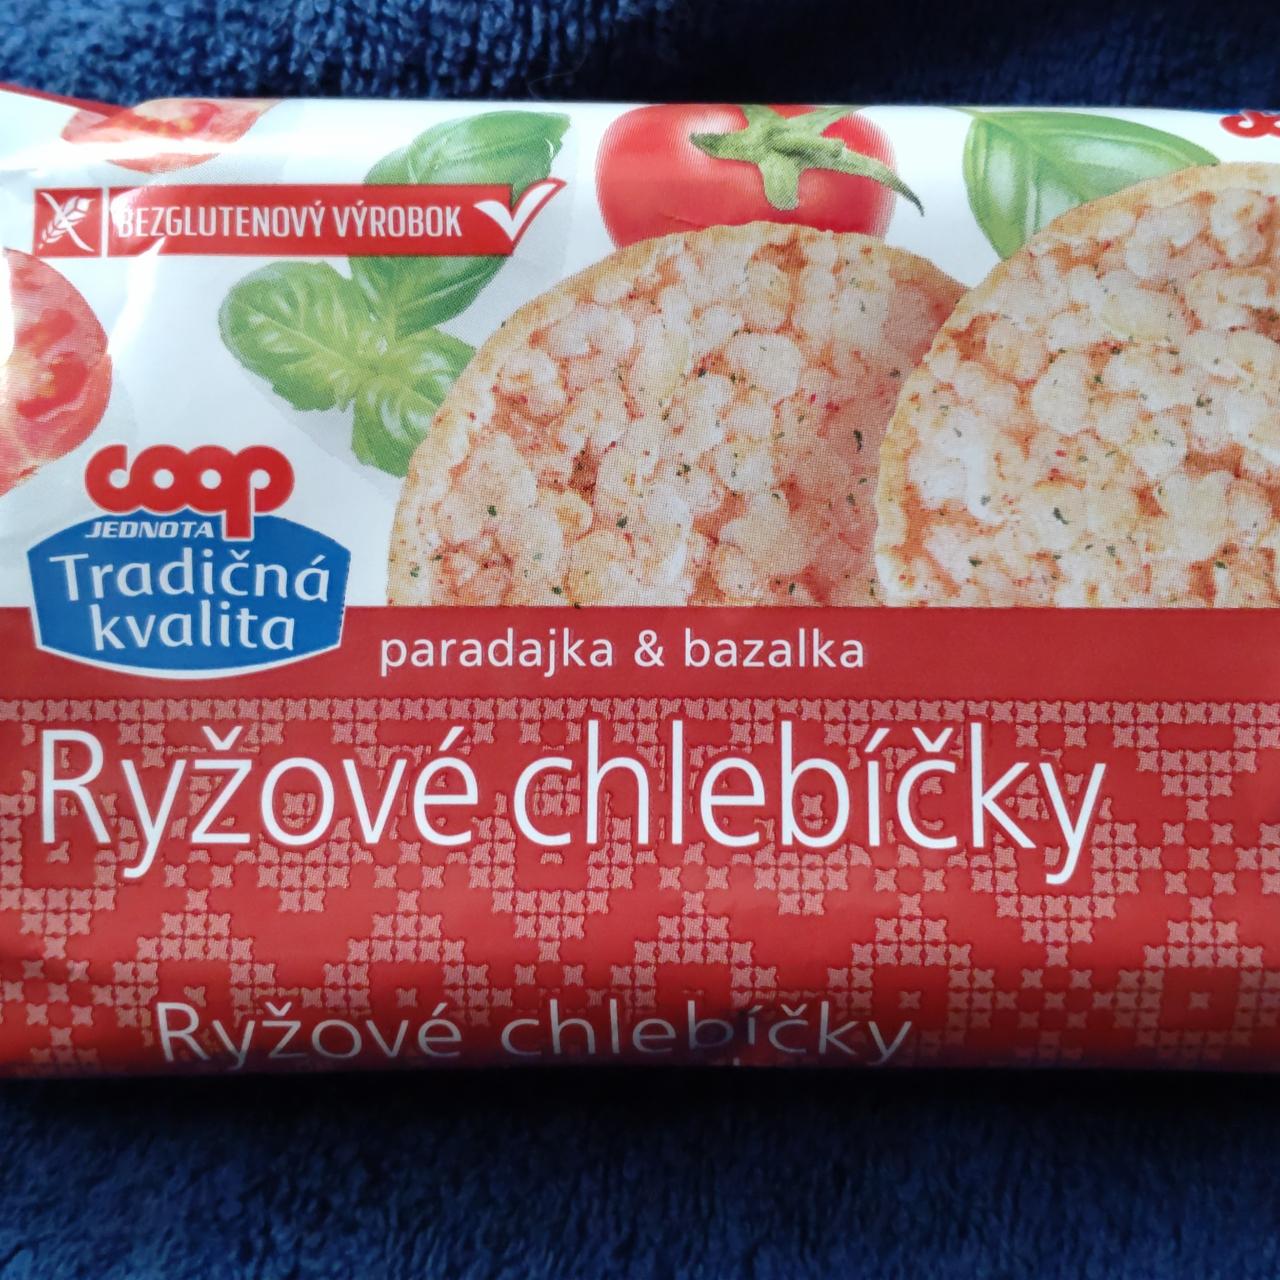 Fotografie - Ryžové chlebíčky paradajka & bazalka Coop Tradičná kvalita